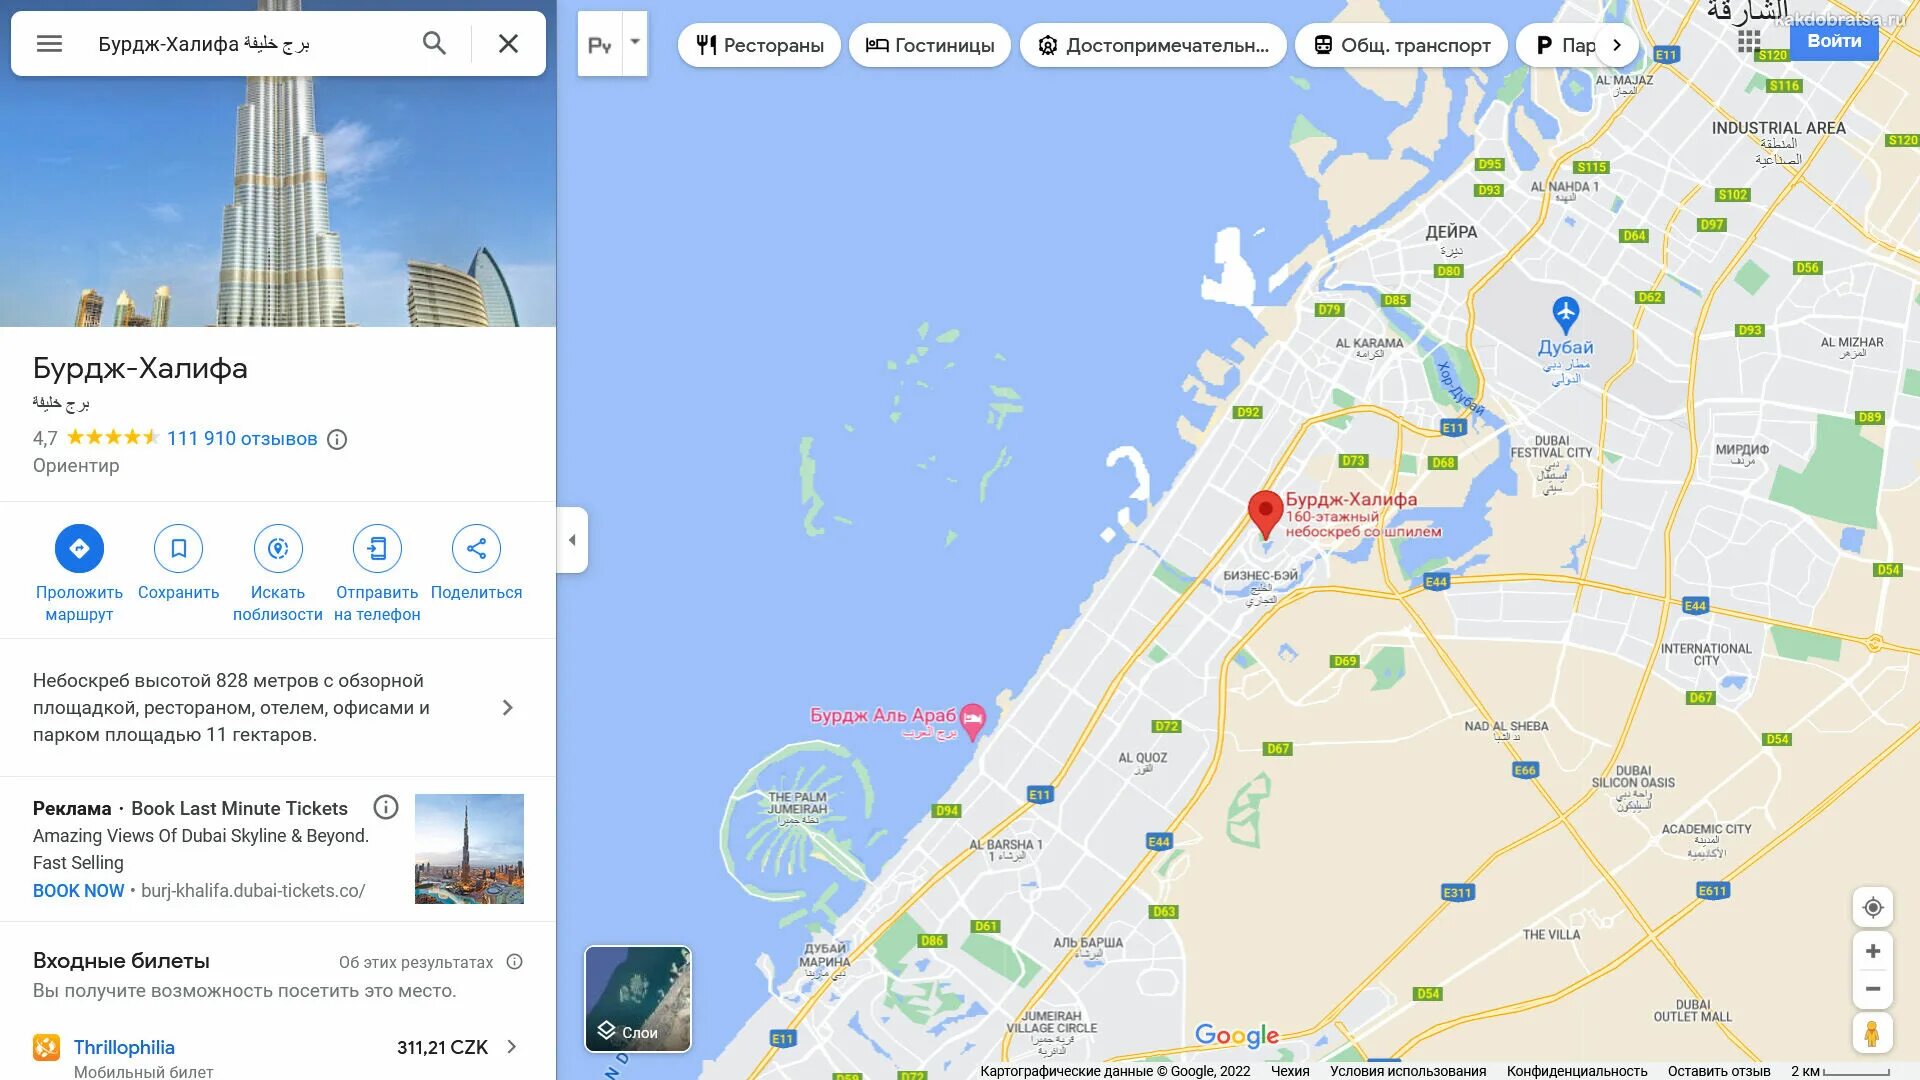 Бурдж Халифа на карте Дубая. Дубай карта города. Аэропорты Дубая на карте. Где находится Бурдж Халифа на карте.